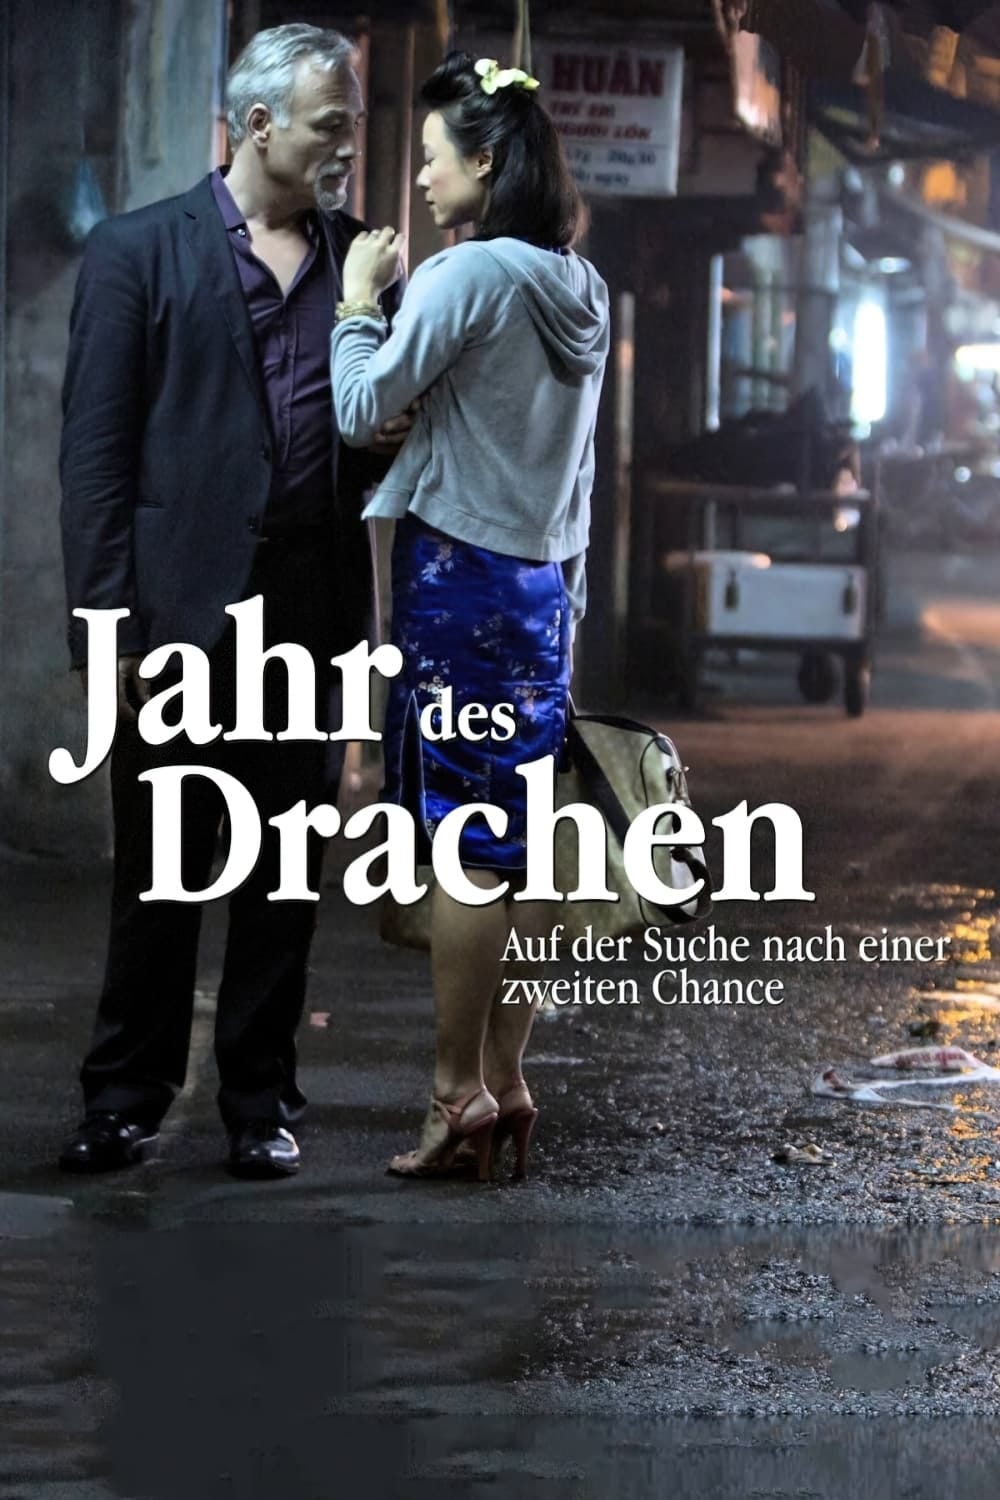 Jahr des Drachen (2012) | Poster